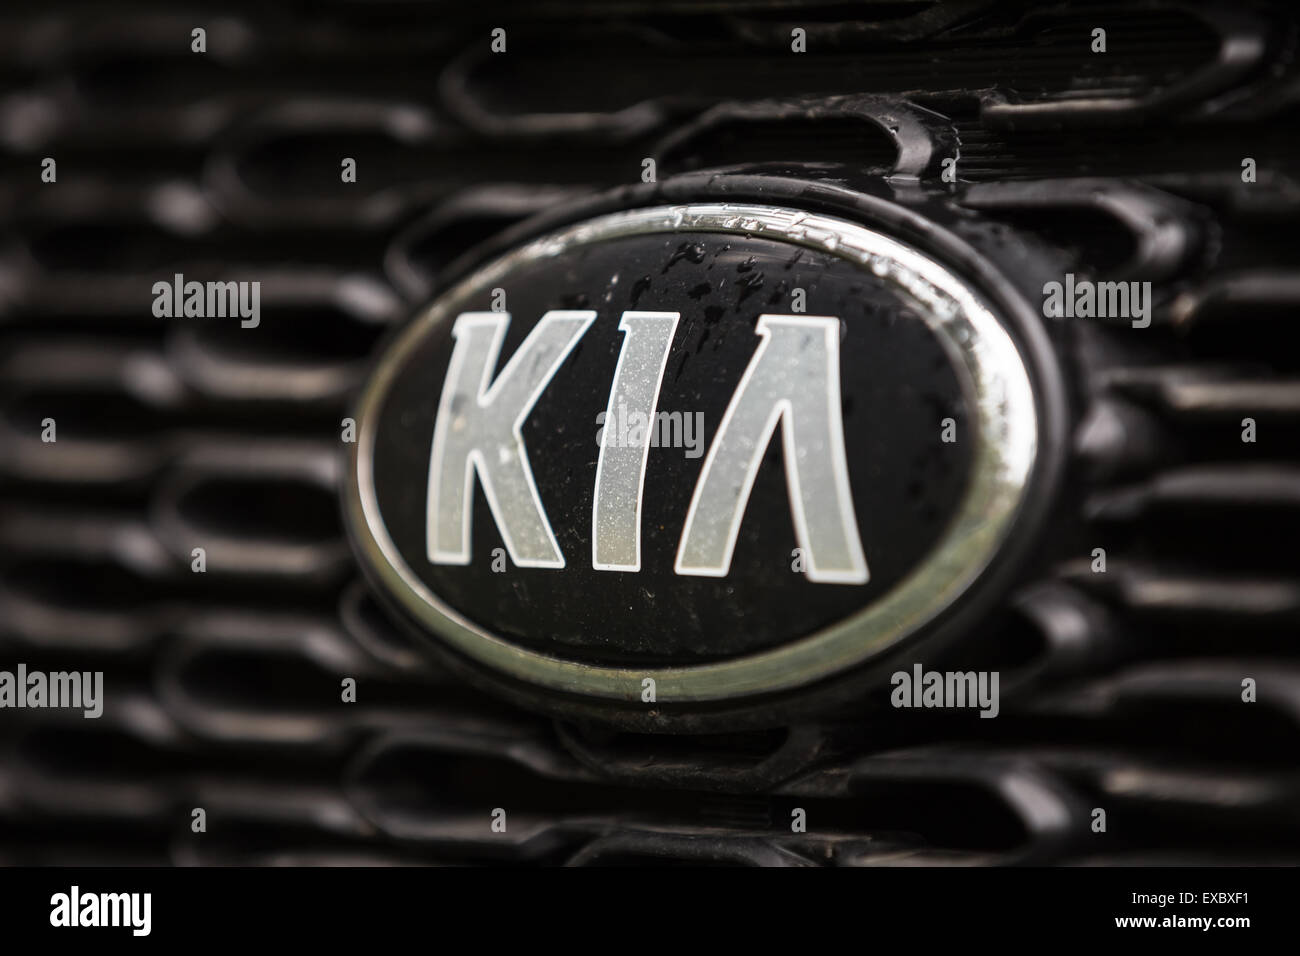 MINSK, BELARUS - 2 mai 2015 : KIA Logo Argent. Fondée en 1944, Kia Motors est Corée du deuxième plus grand constructeur automobile. Banque D'Images